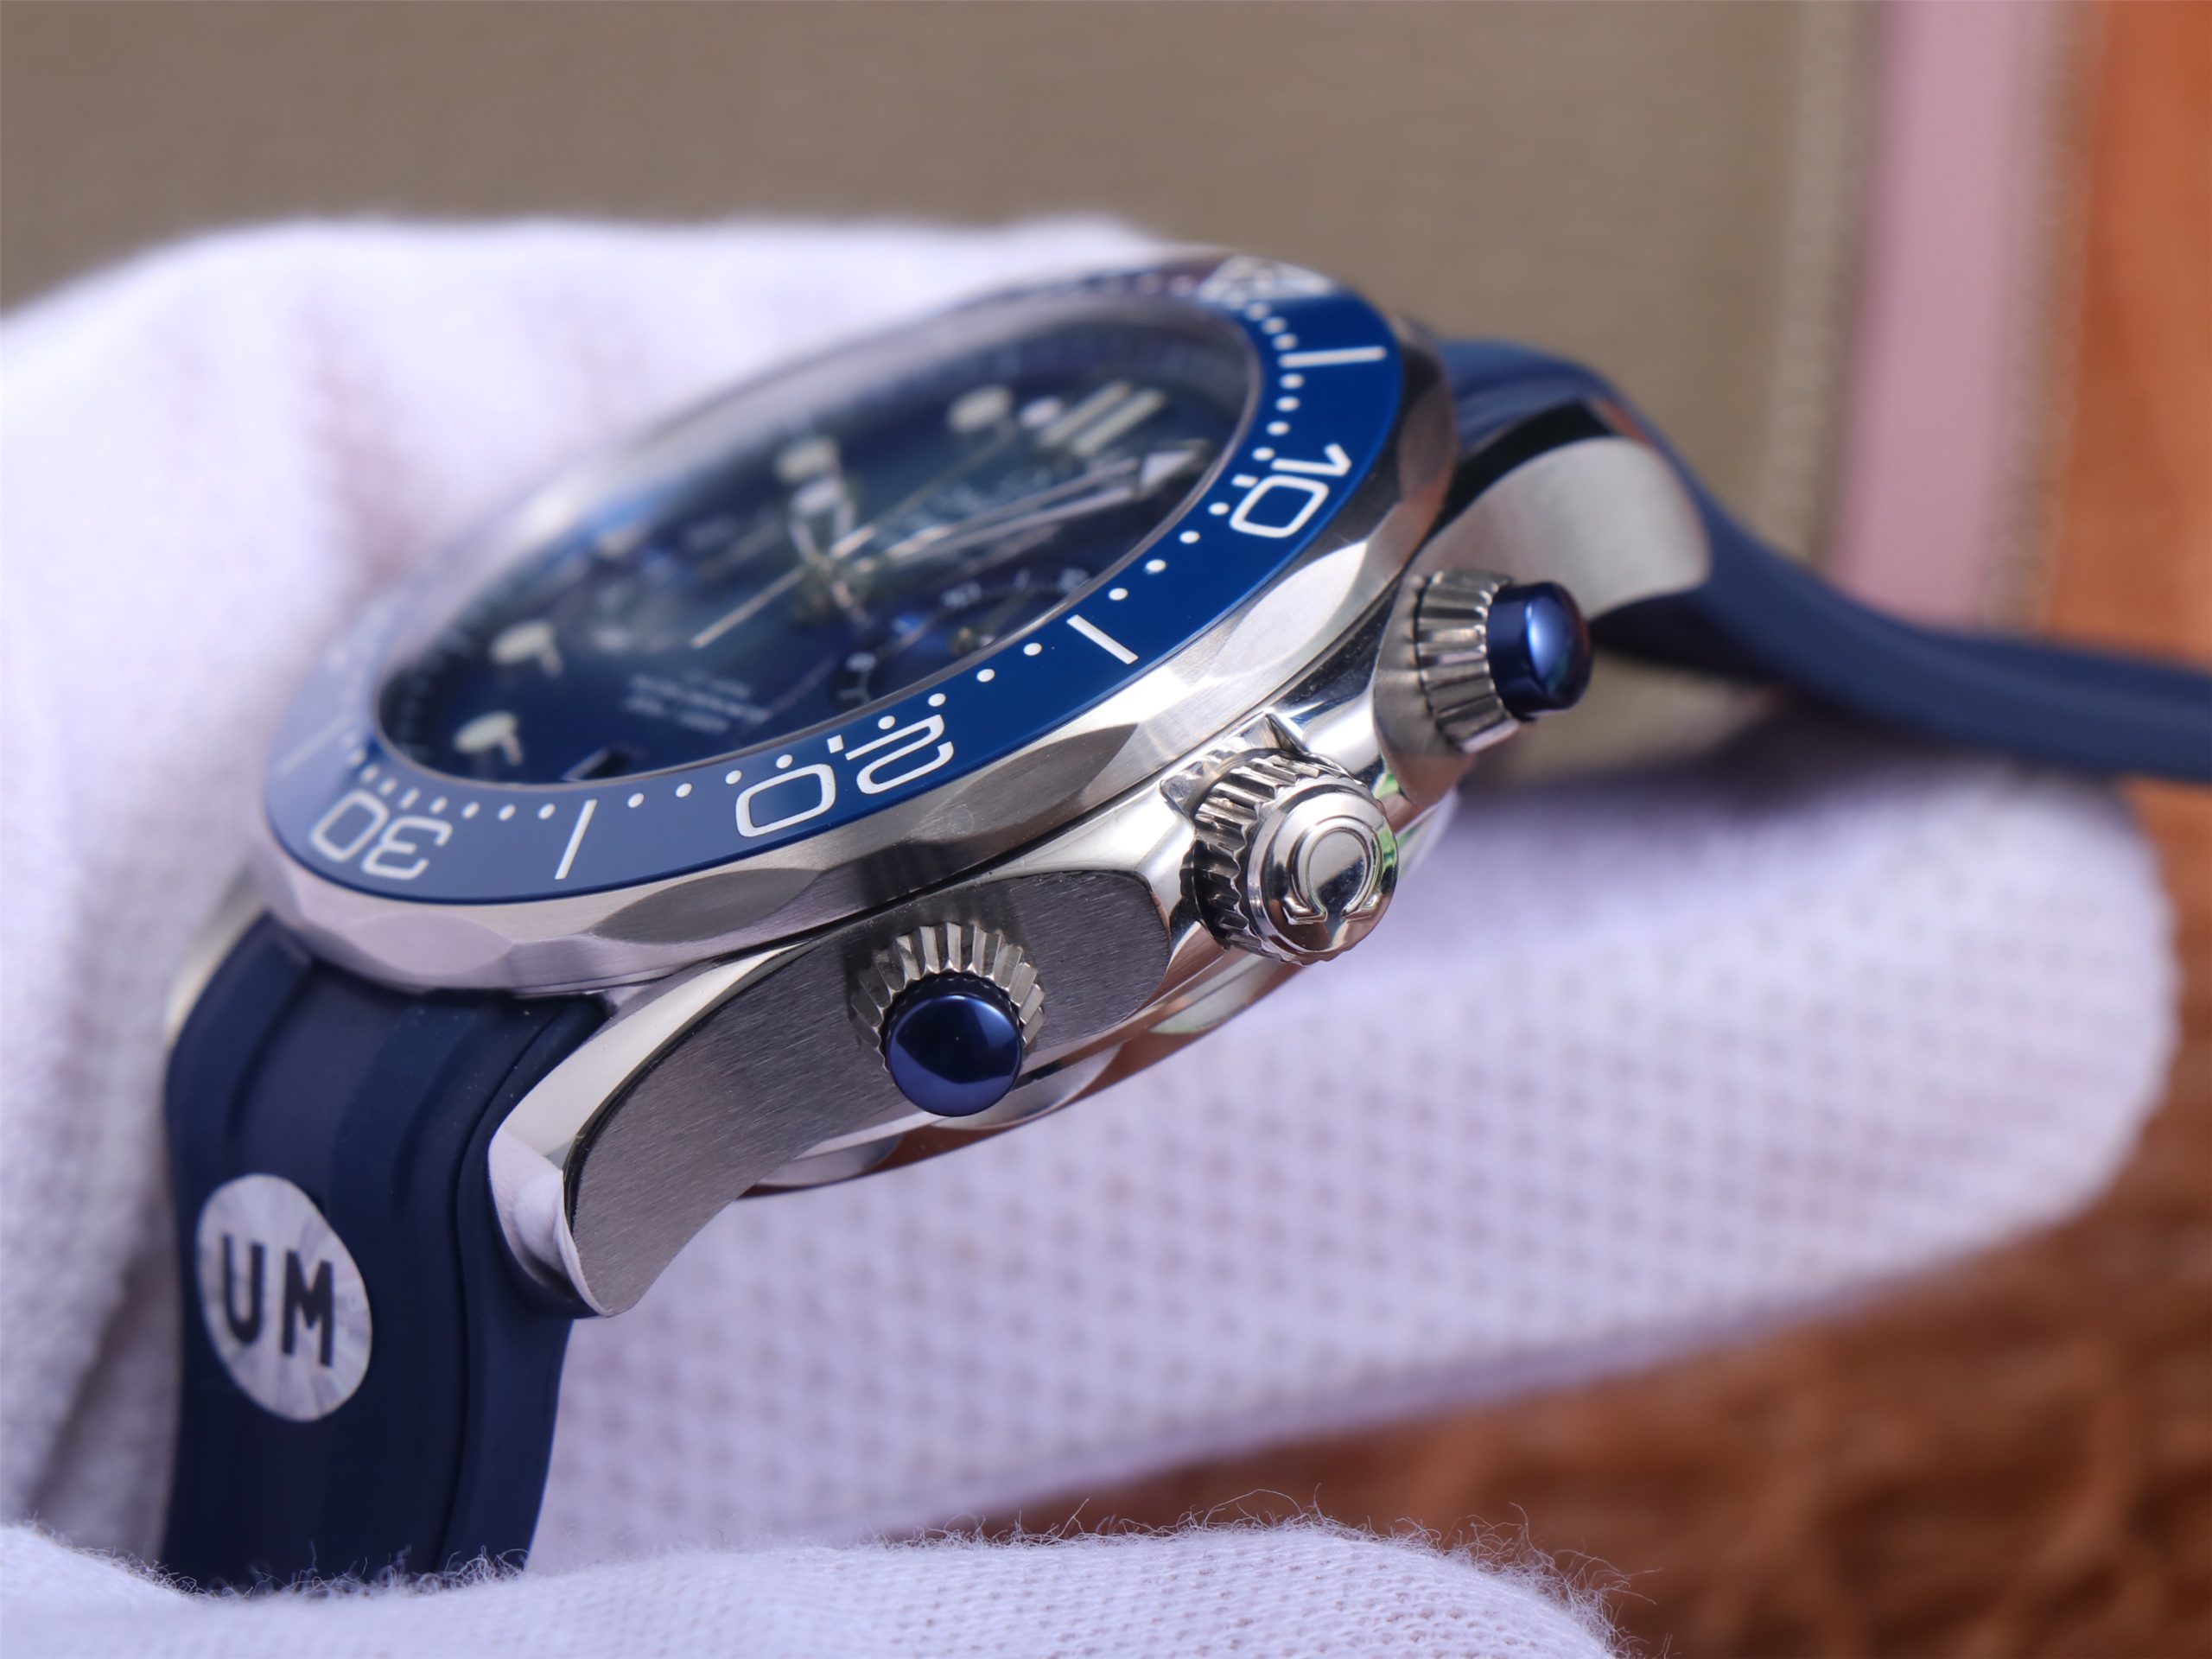 2023042601362489 scaled - um錶廠手錶歐米茄海馬一比一復刻錶 210.30.44.51.03.001￥4680 